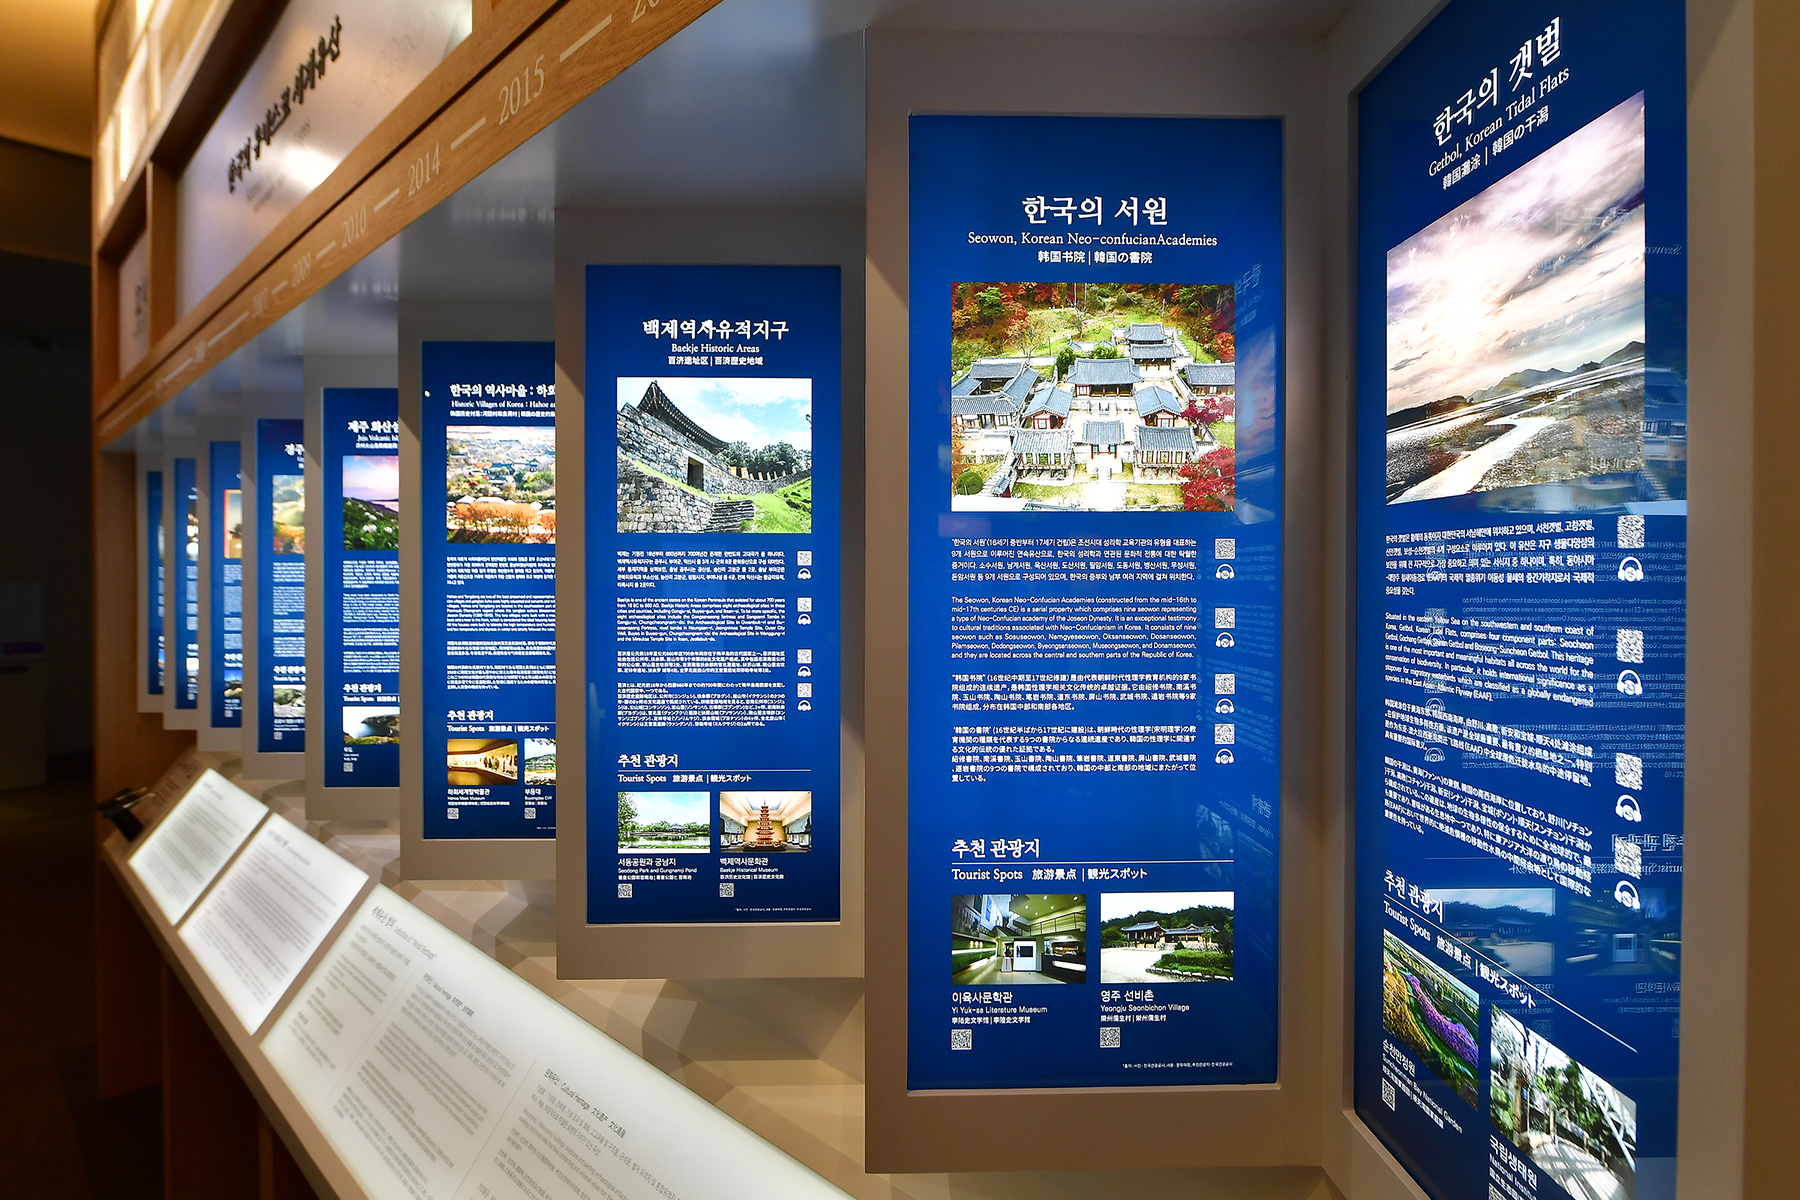 1階韓国観光展示館 テーマ 2. 美しい国、韓国 7